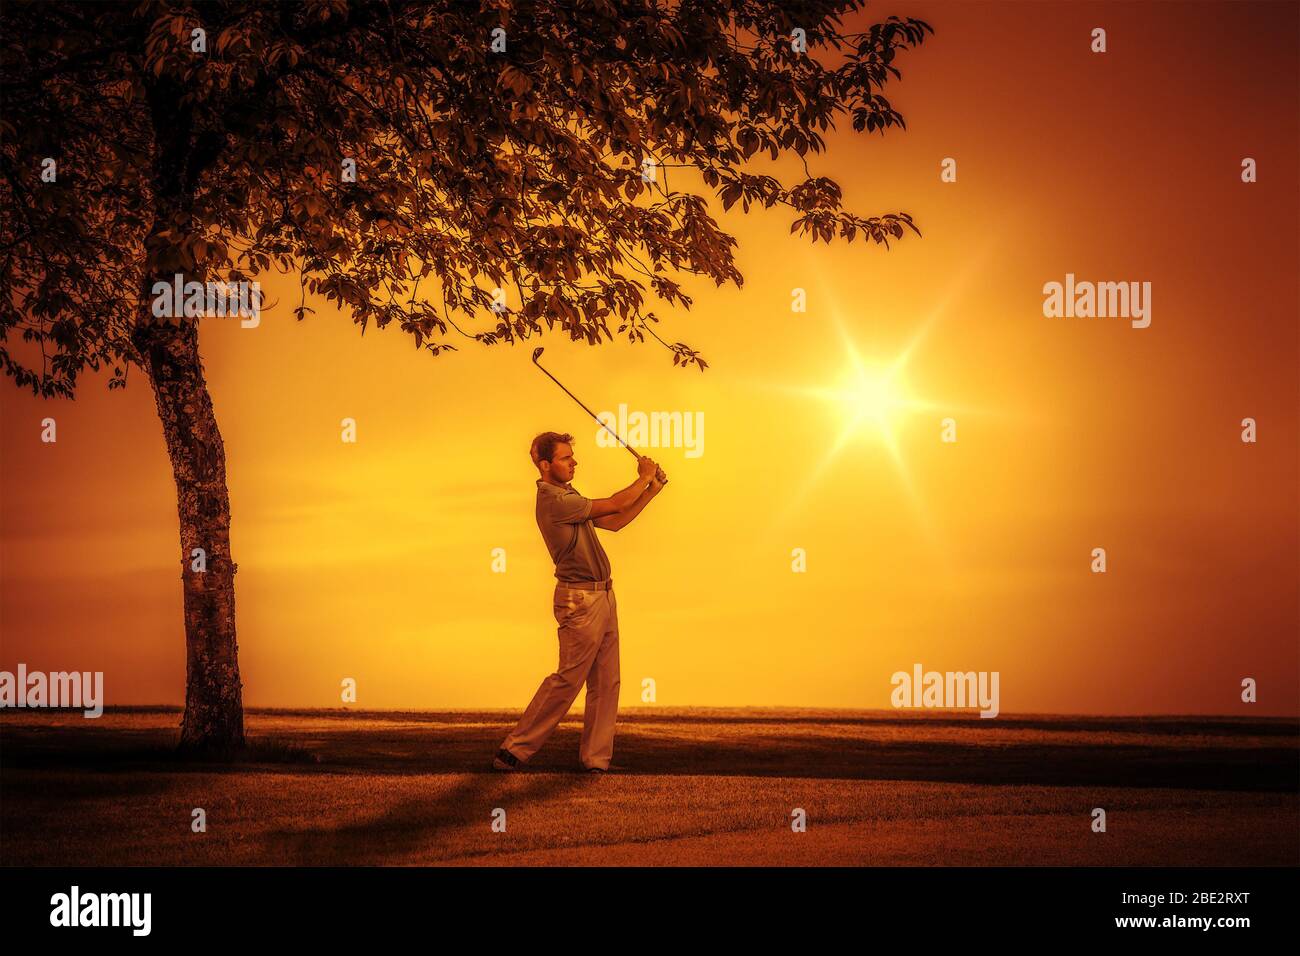 Ein Golfer bei Sonnenuntergang Stock Photo